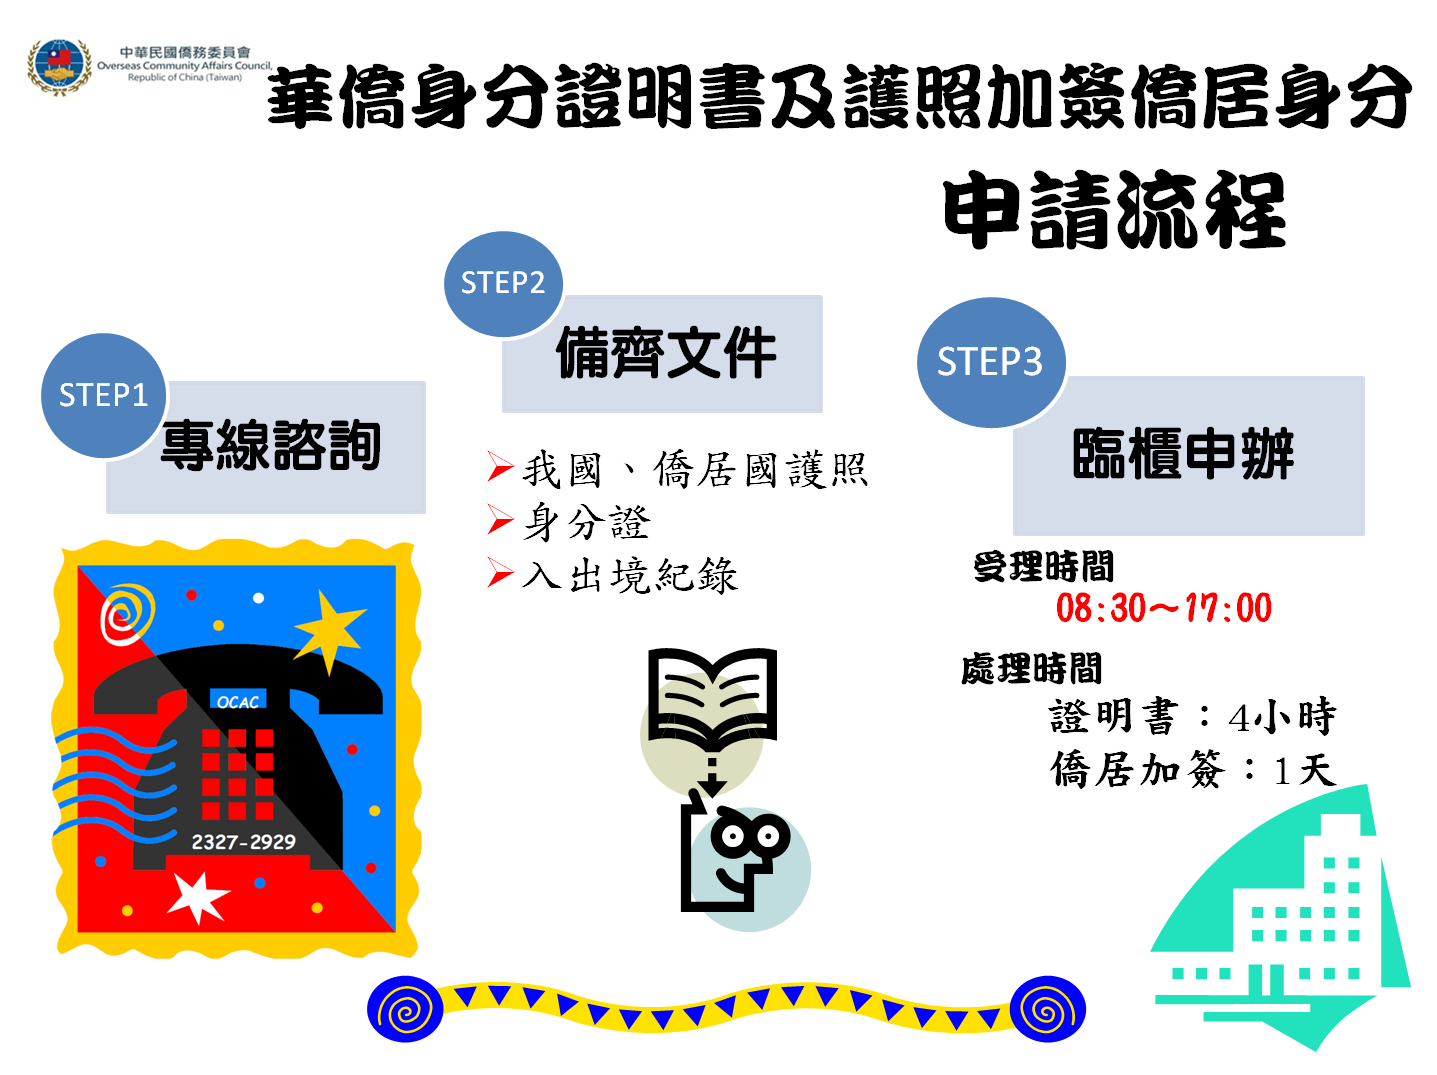 華僑身分證明書及護照加簽僑居身分申請流程